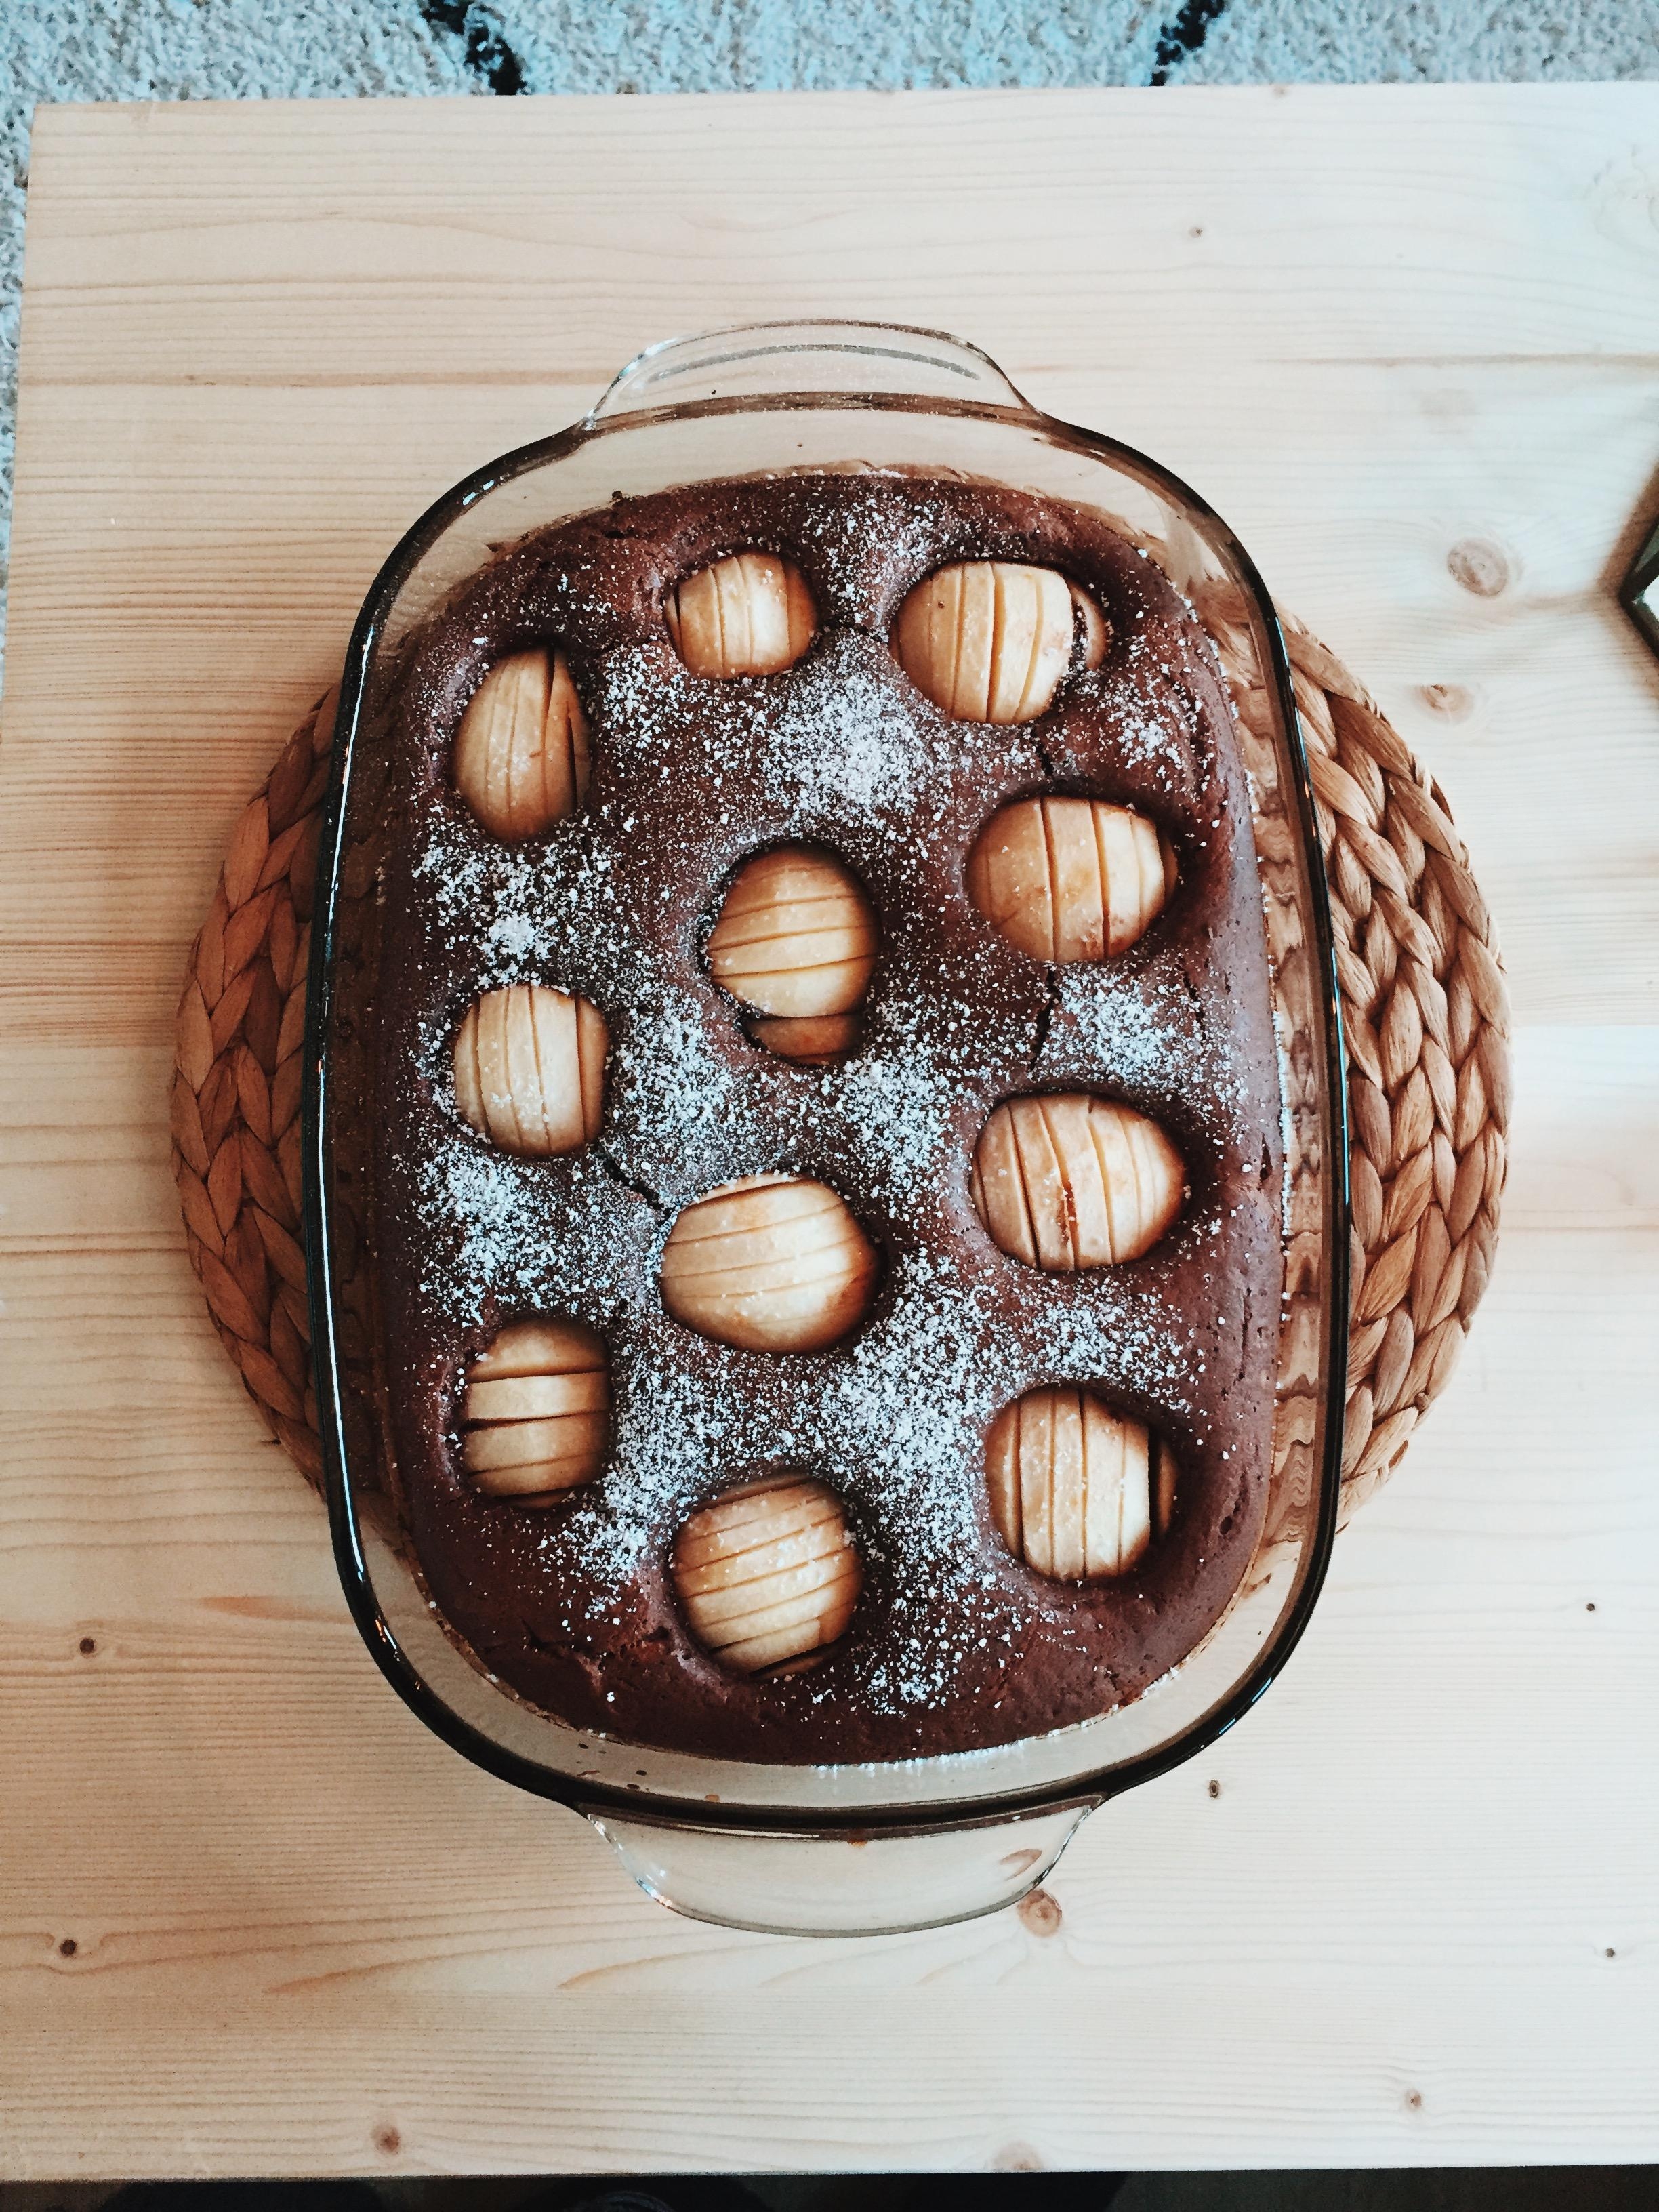 Montag 😴
Ein Kuchen am Morgen vertreibt Kummer und Sorgen! #motivationsmontag #neuewoche #apfelschokoladenkuchen